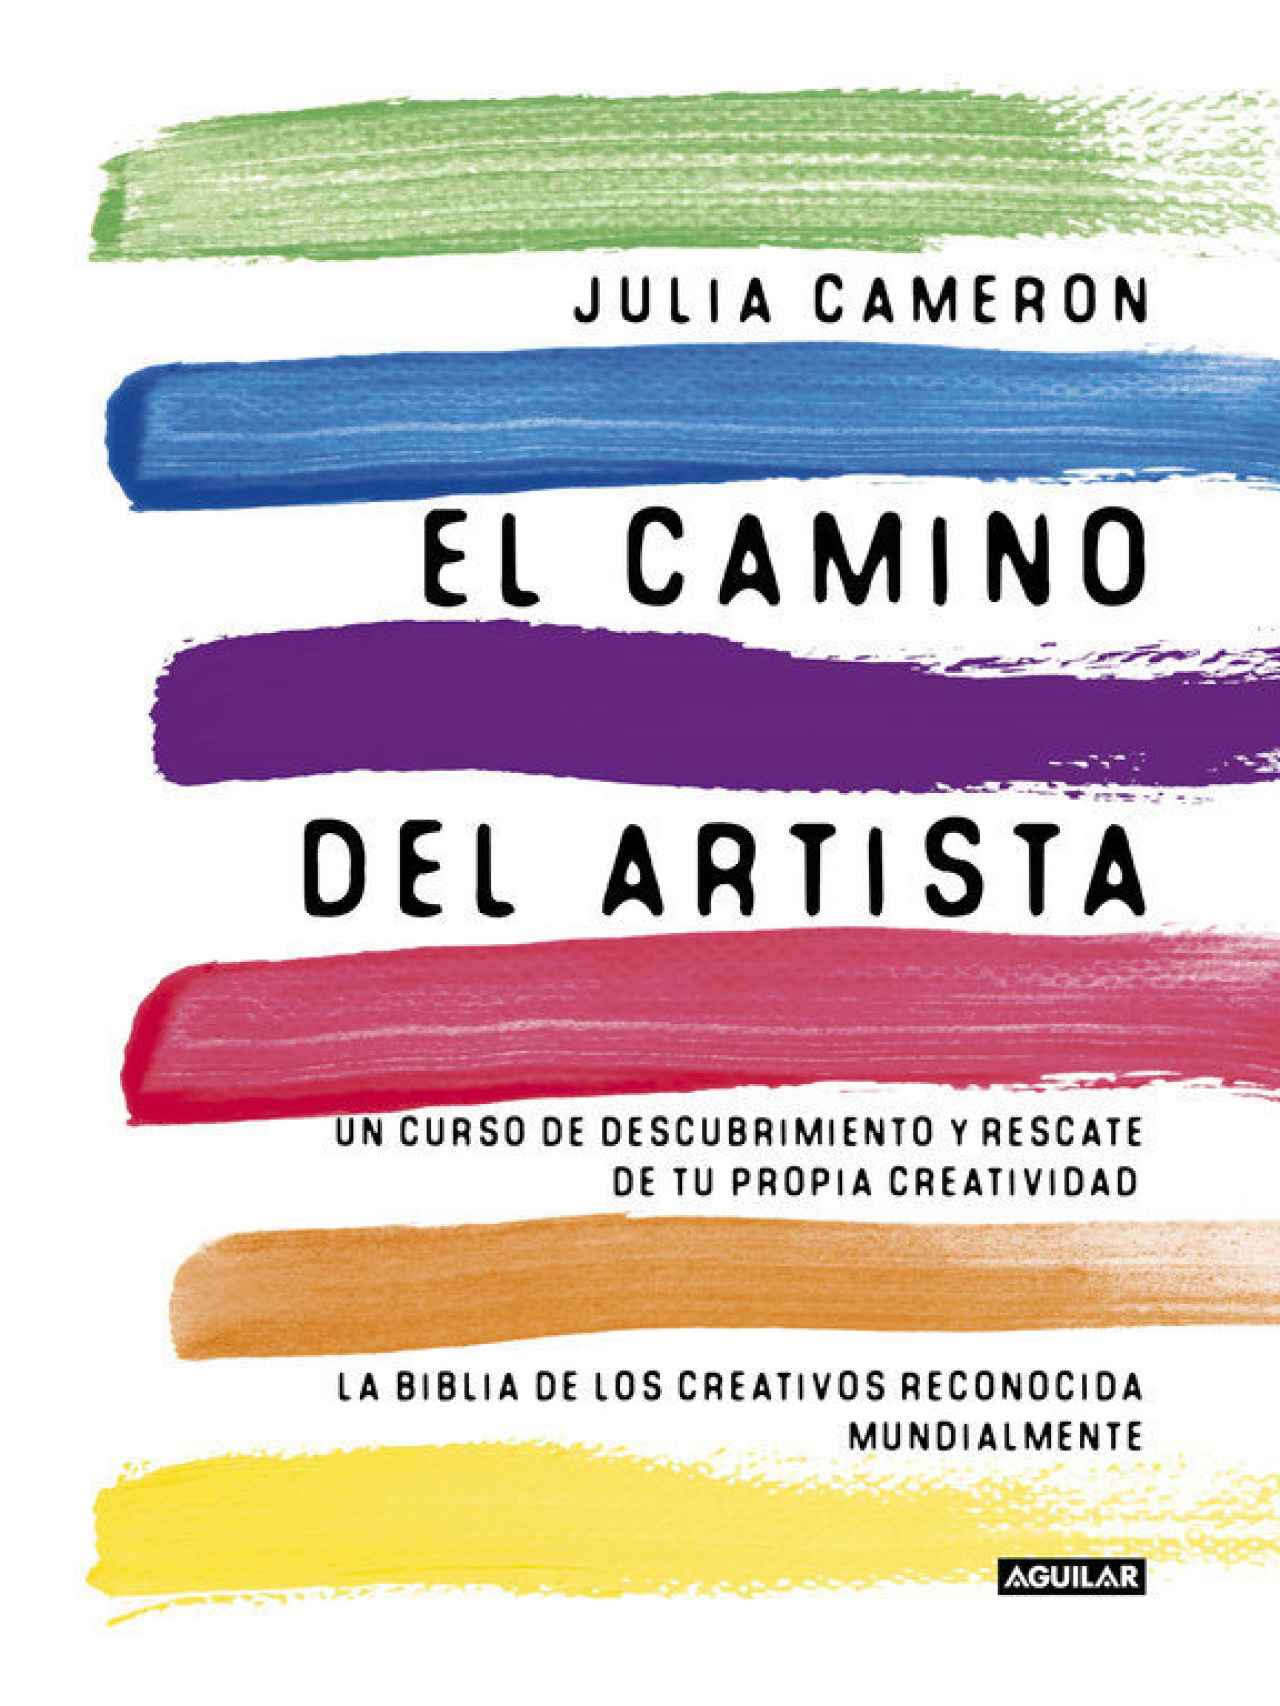 Portada de la edición en España del libro de Julia Cameron The Artist's Way.